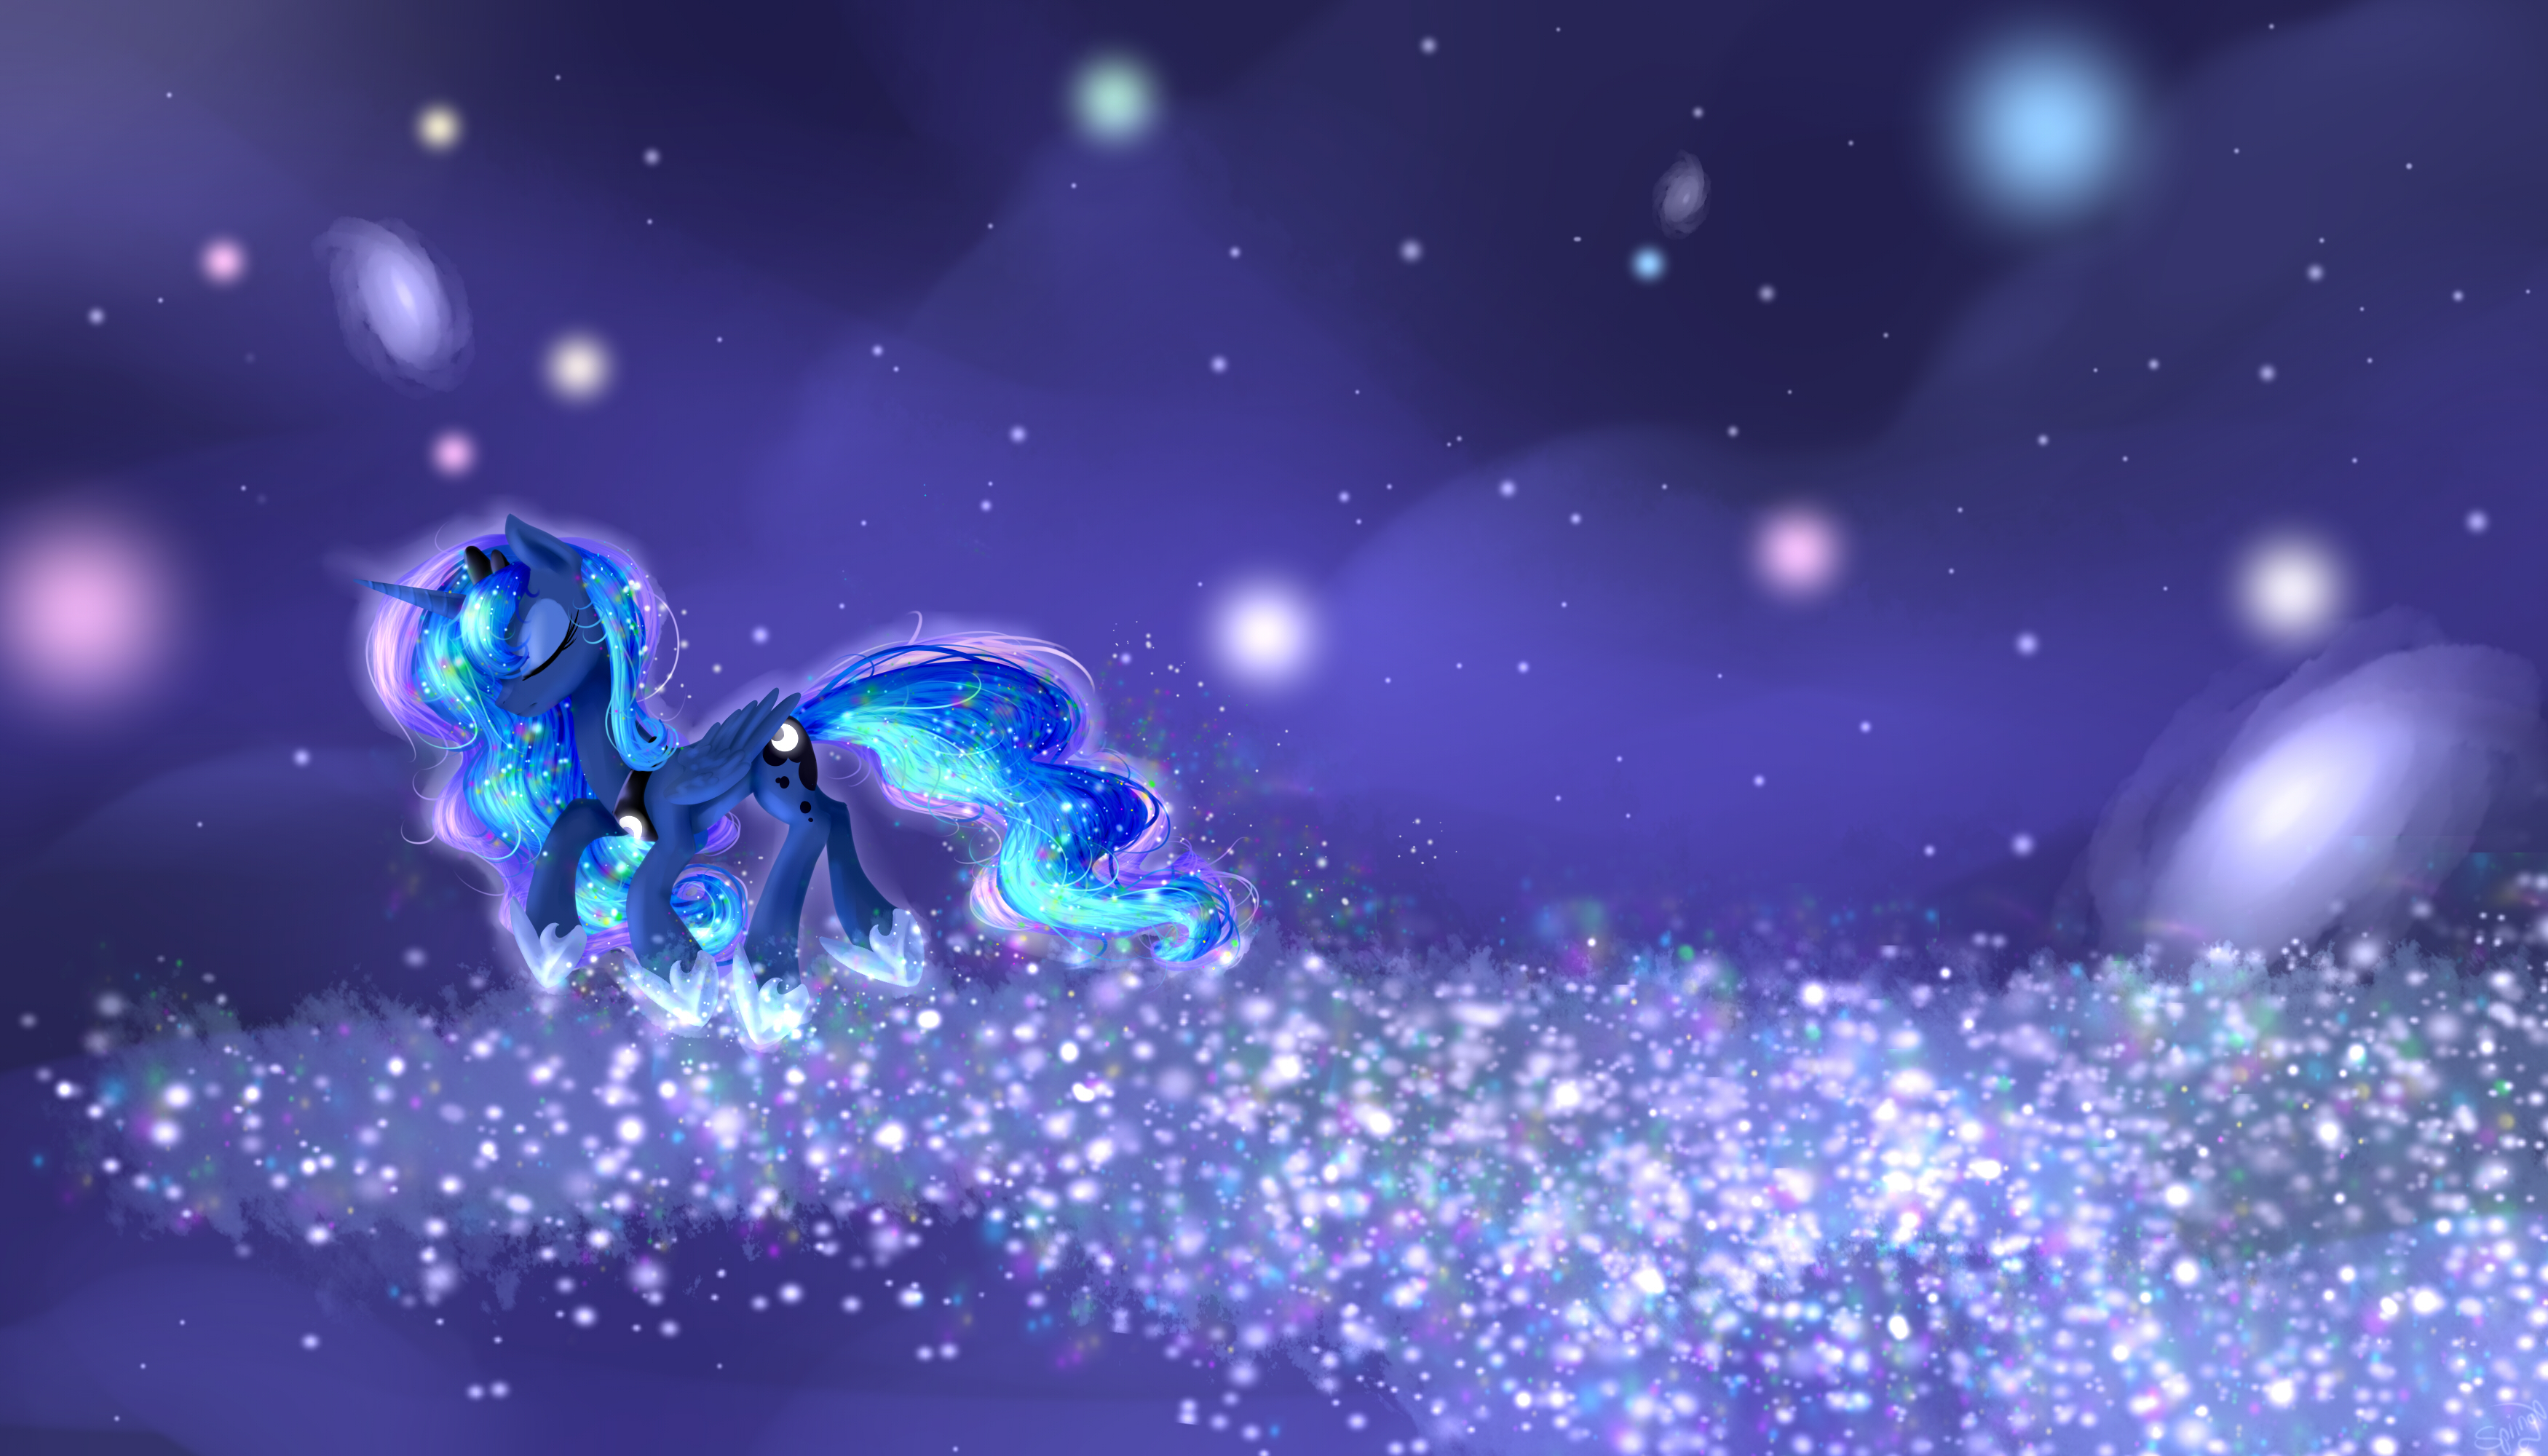 My Little Pony: Friendship is Magic HD Wallpaper by Alice4444DM